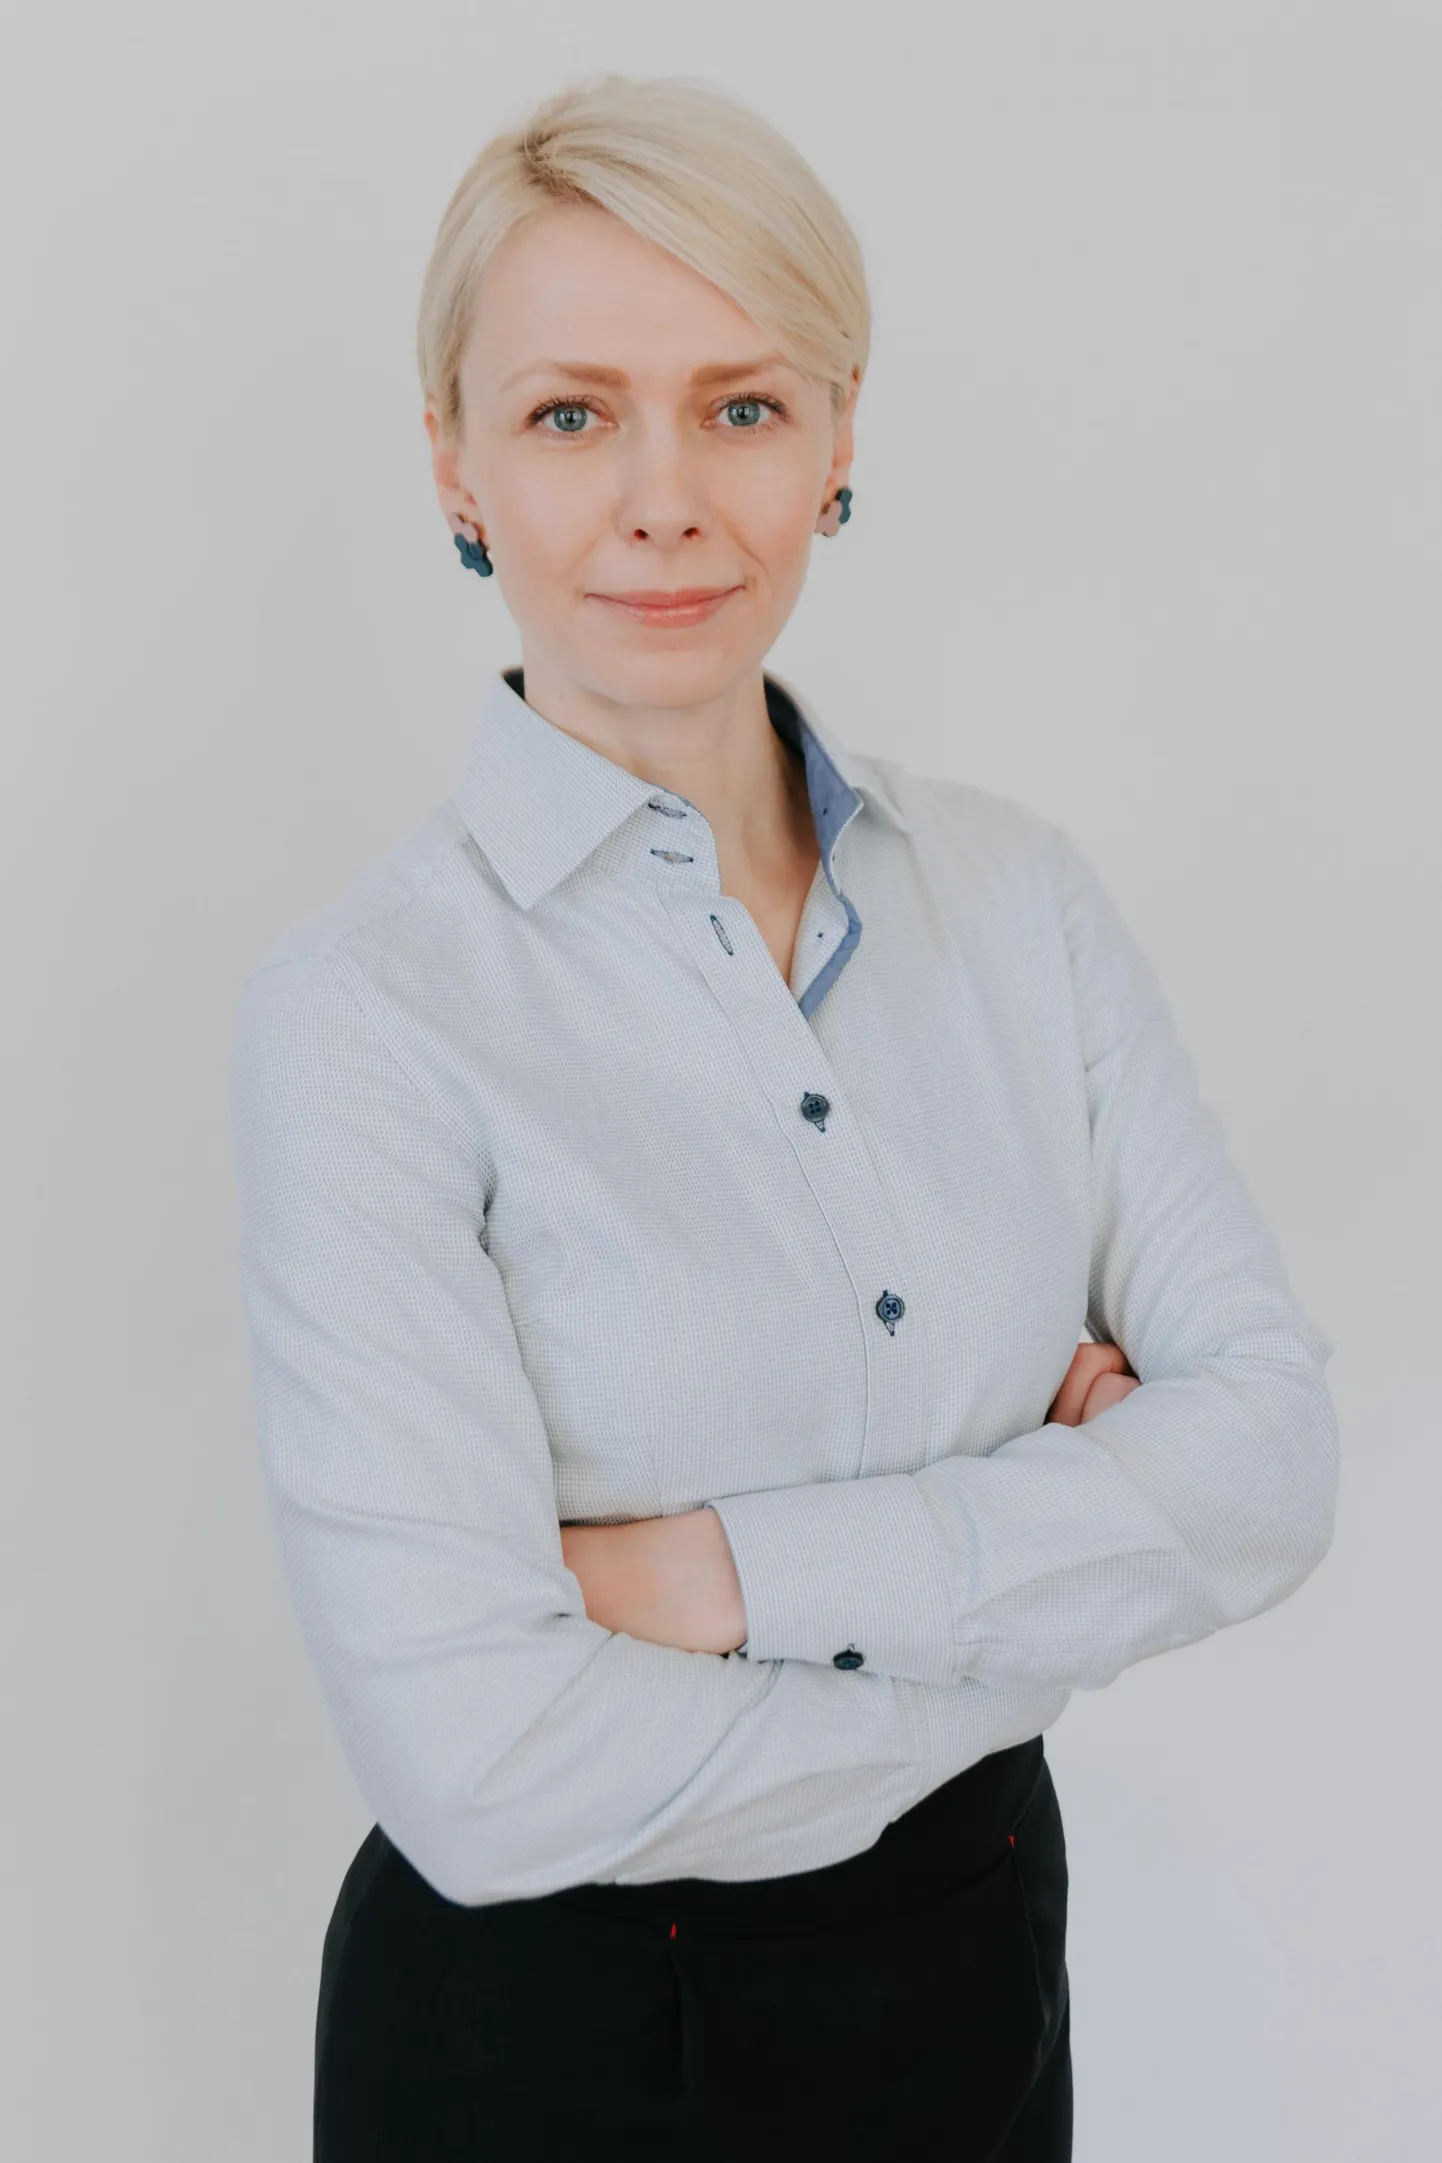 Tallinna linnaplaneerimise ameti muinsuskaitse osakonna uueks juhiks valiti Carolin Pihlap, kes on varem töötanud eri ametikohtadel riigi muinsuskaitseametis.